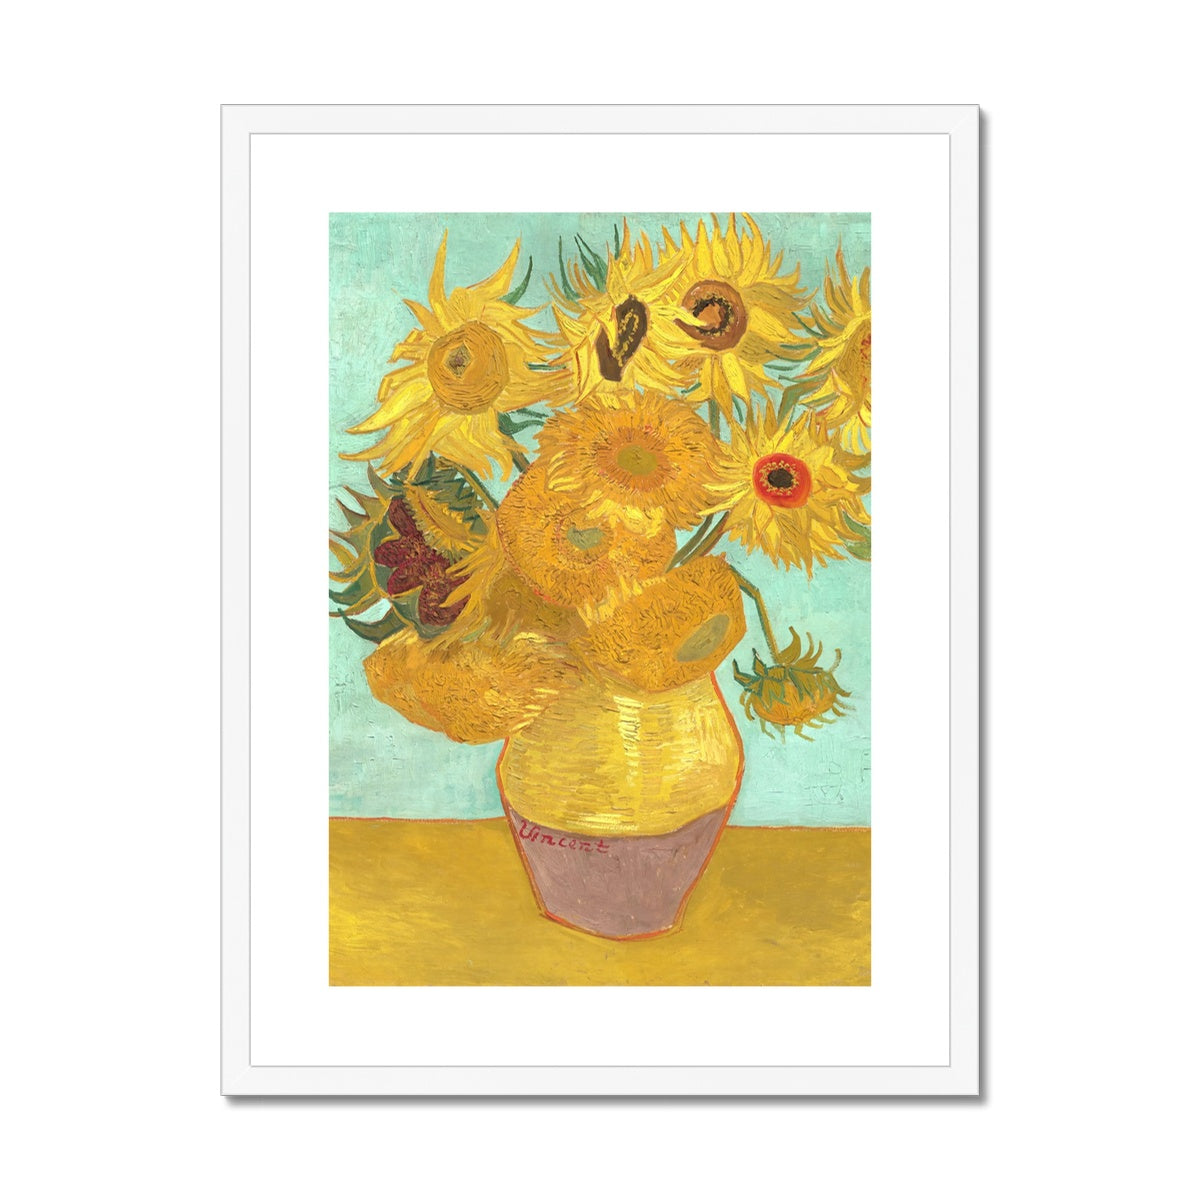 Vincent Van Gogh Framed Open Edition Fine Art Print. 'Sunflowers'. Garden Flowers. Art Gallery Historic Art